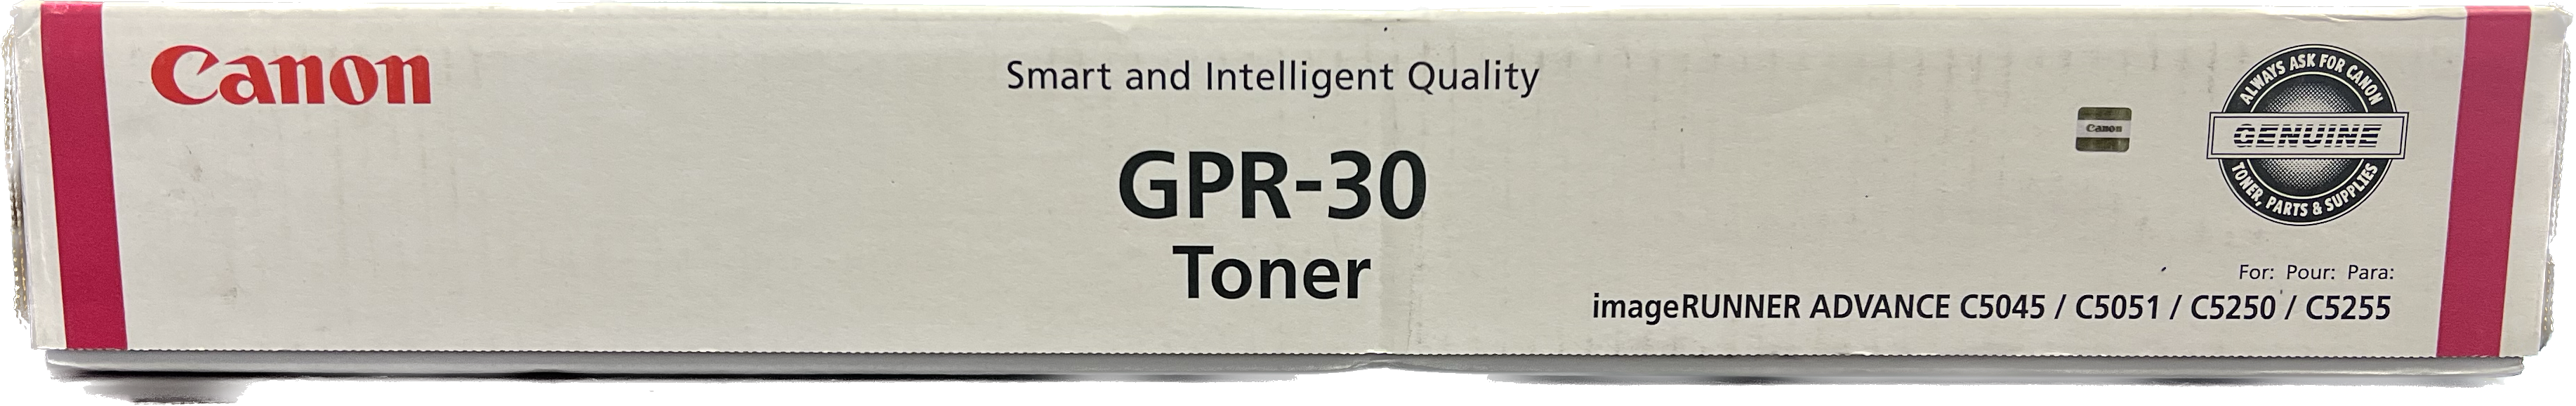 Genuine Canon Magenta Toner Cartridge | 2797B003 | GPR-30M